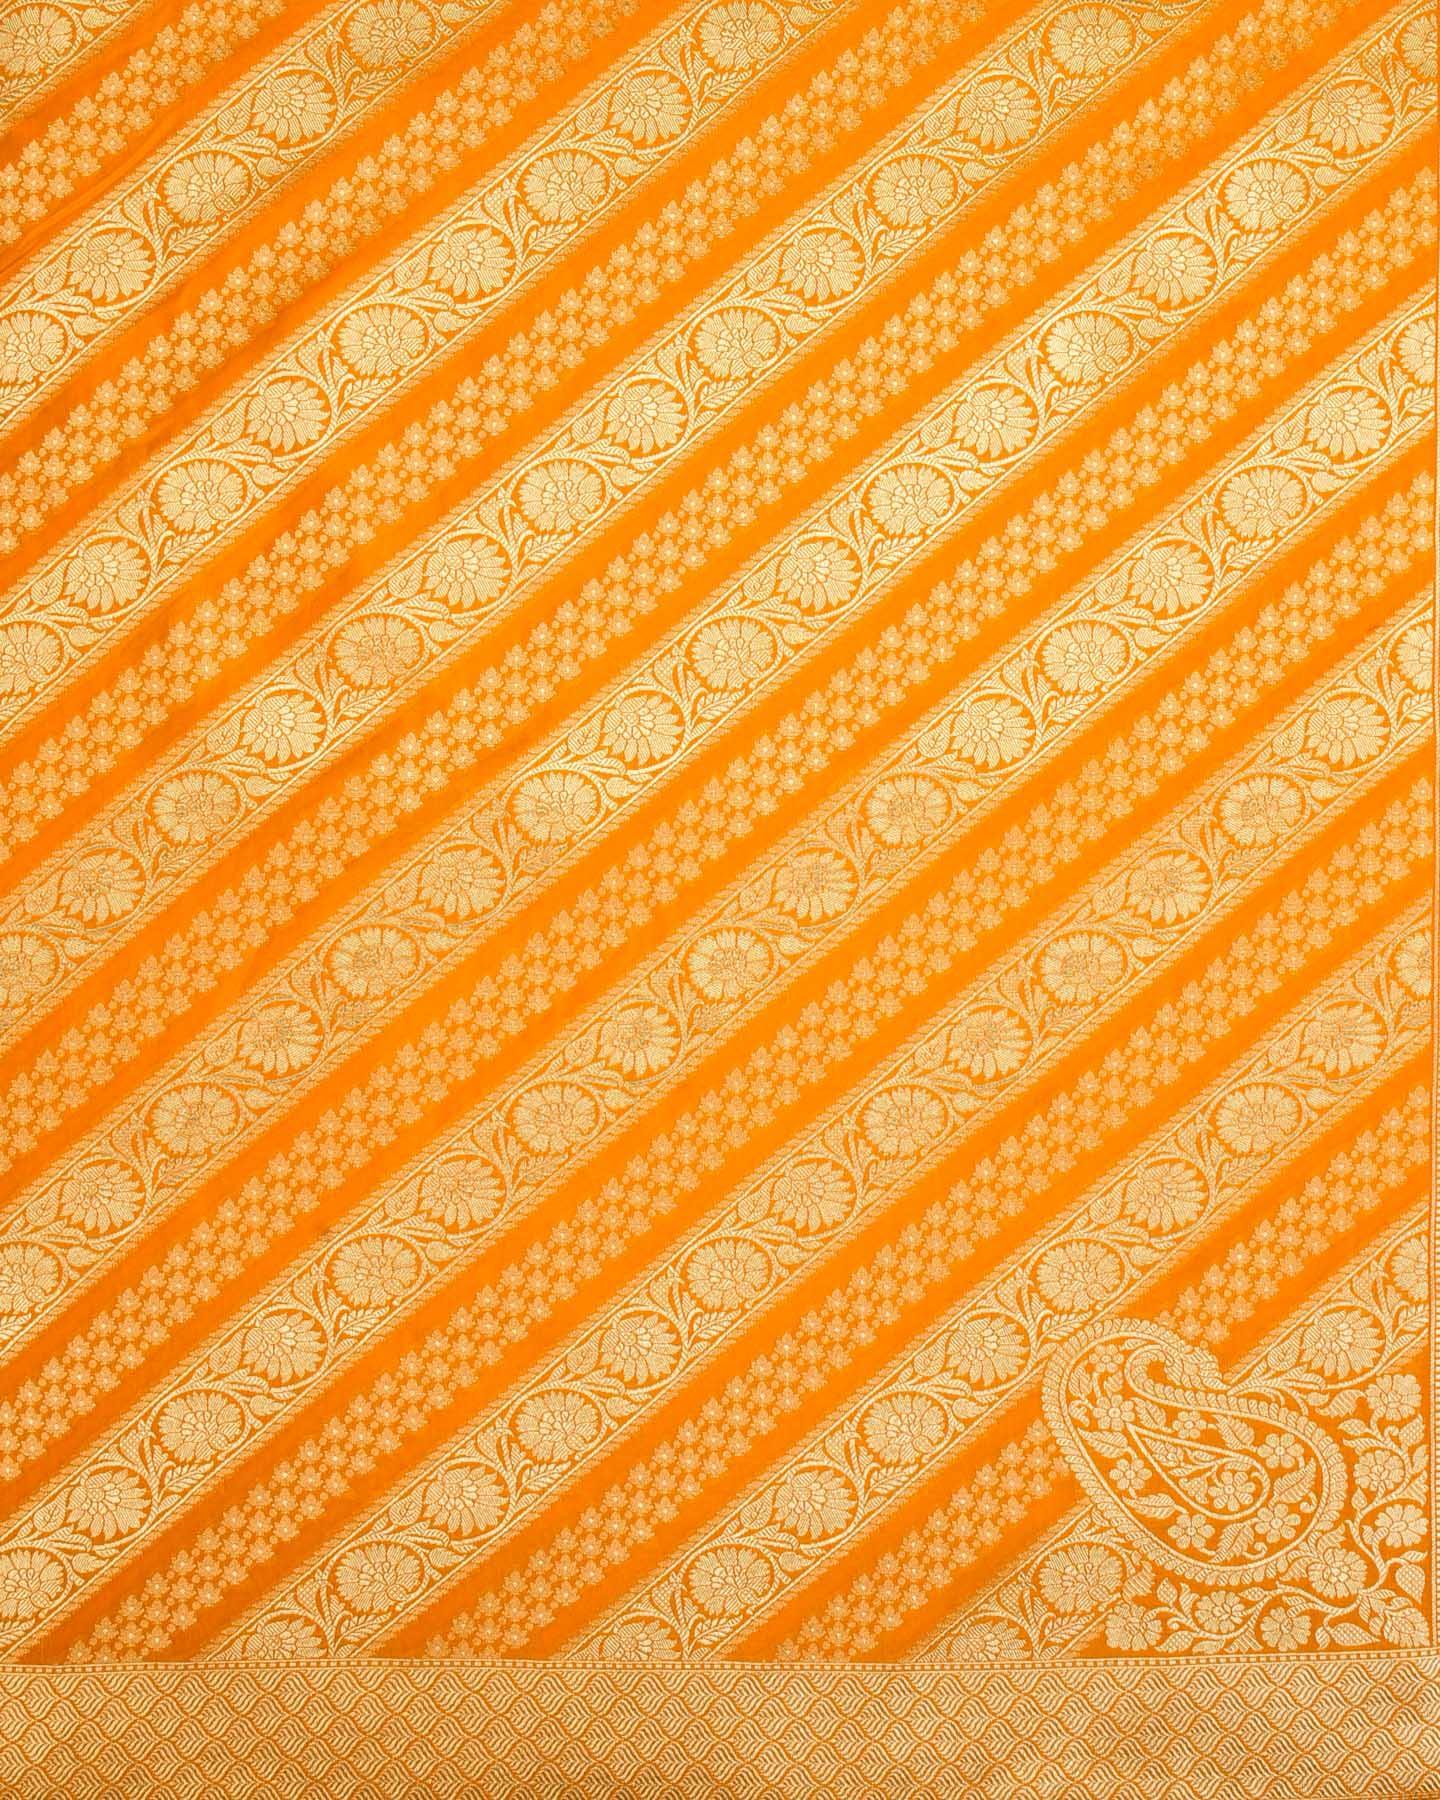 Marigold Yellow Banarasi Diagonal Aada Jaal Cutwork Brocade Woven Art Silk Saree - By HolyWeaves, Benares